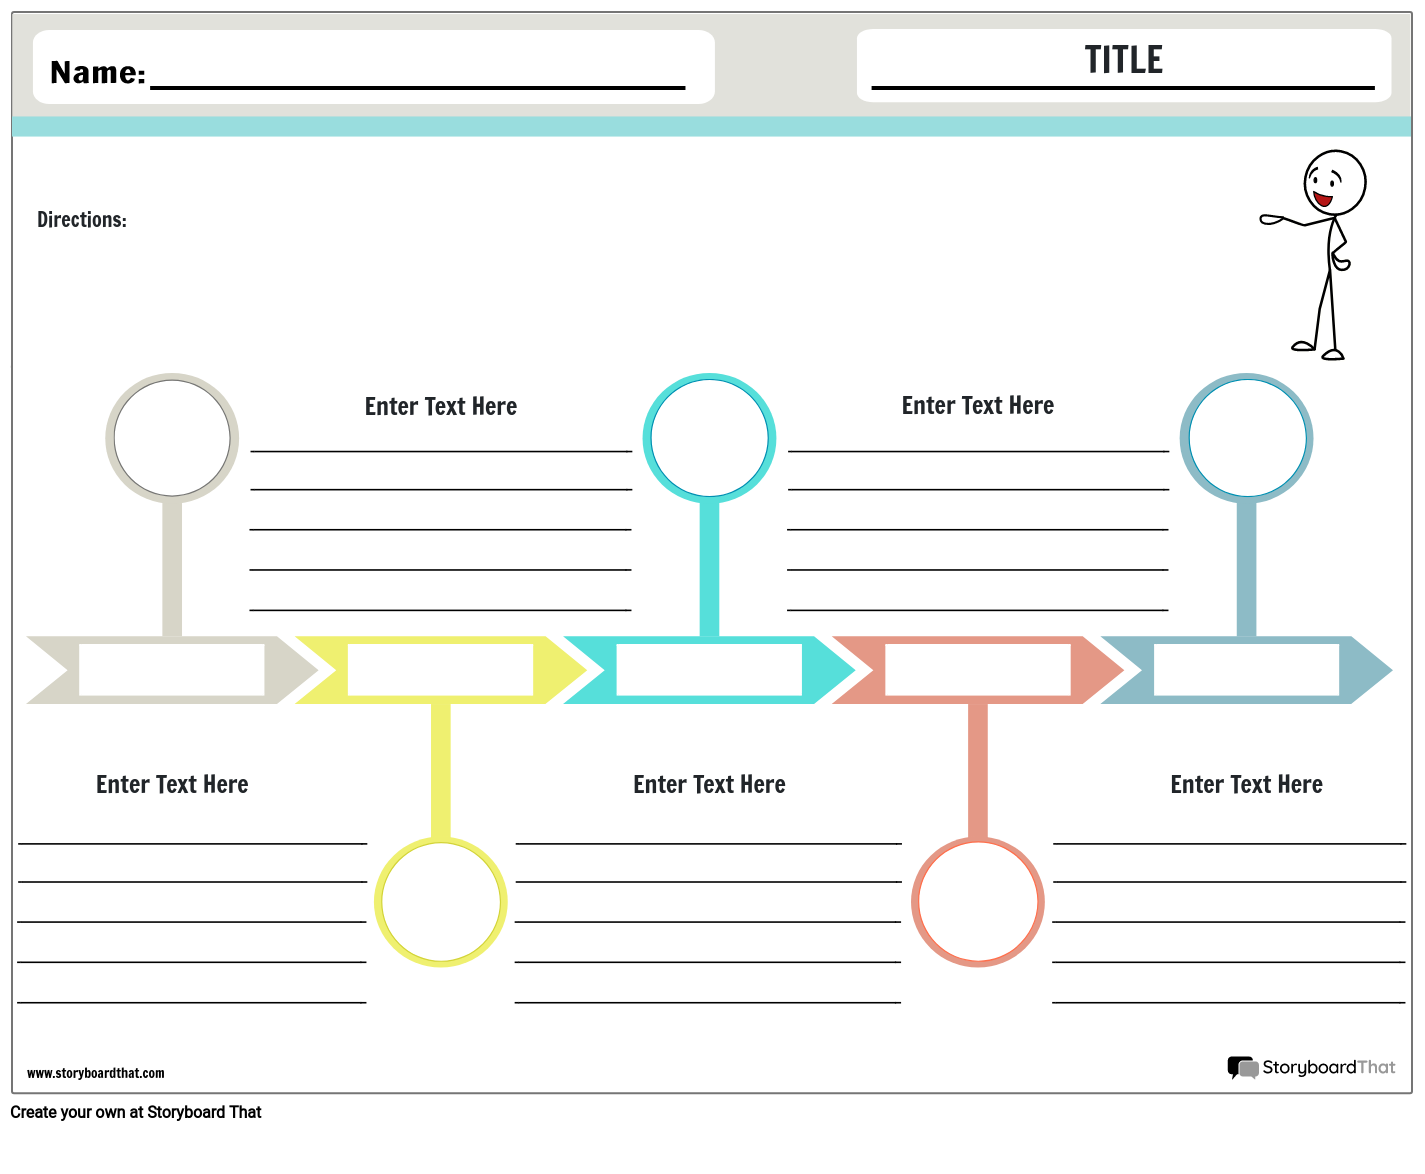 go-timeline-storyboard-przez-worksheet-templates